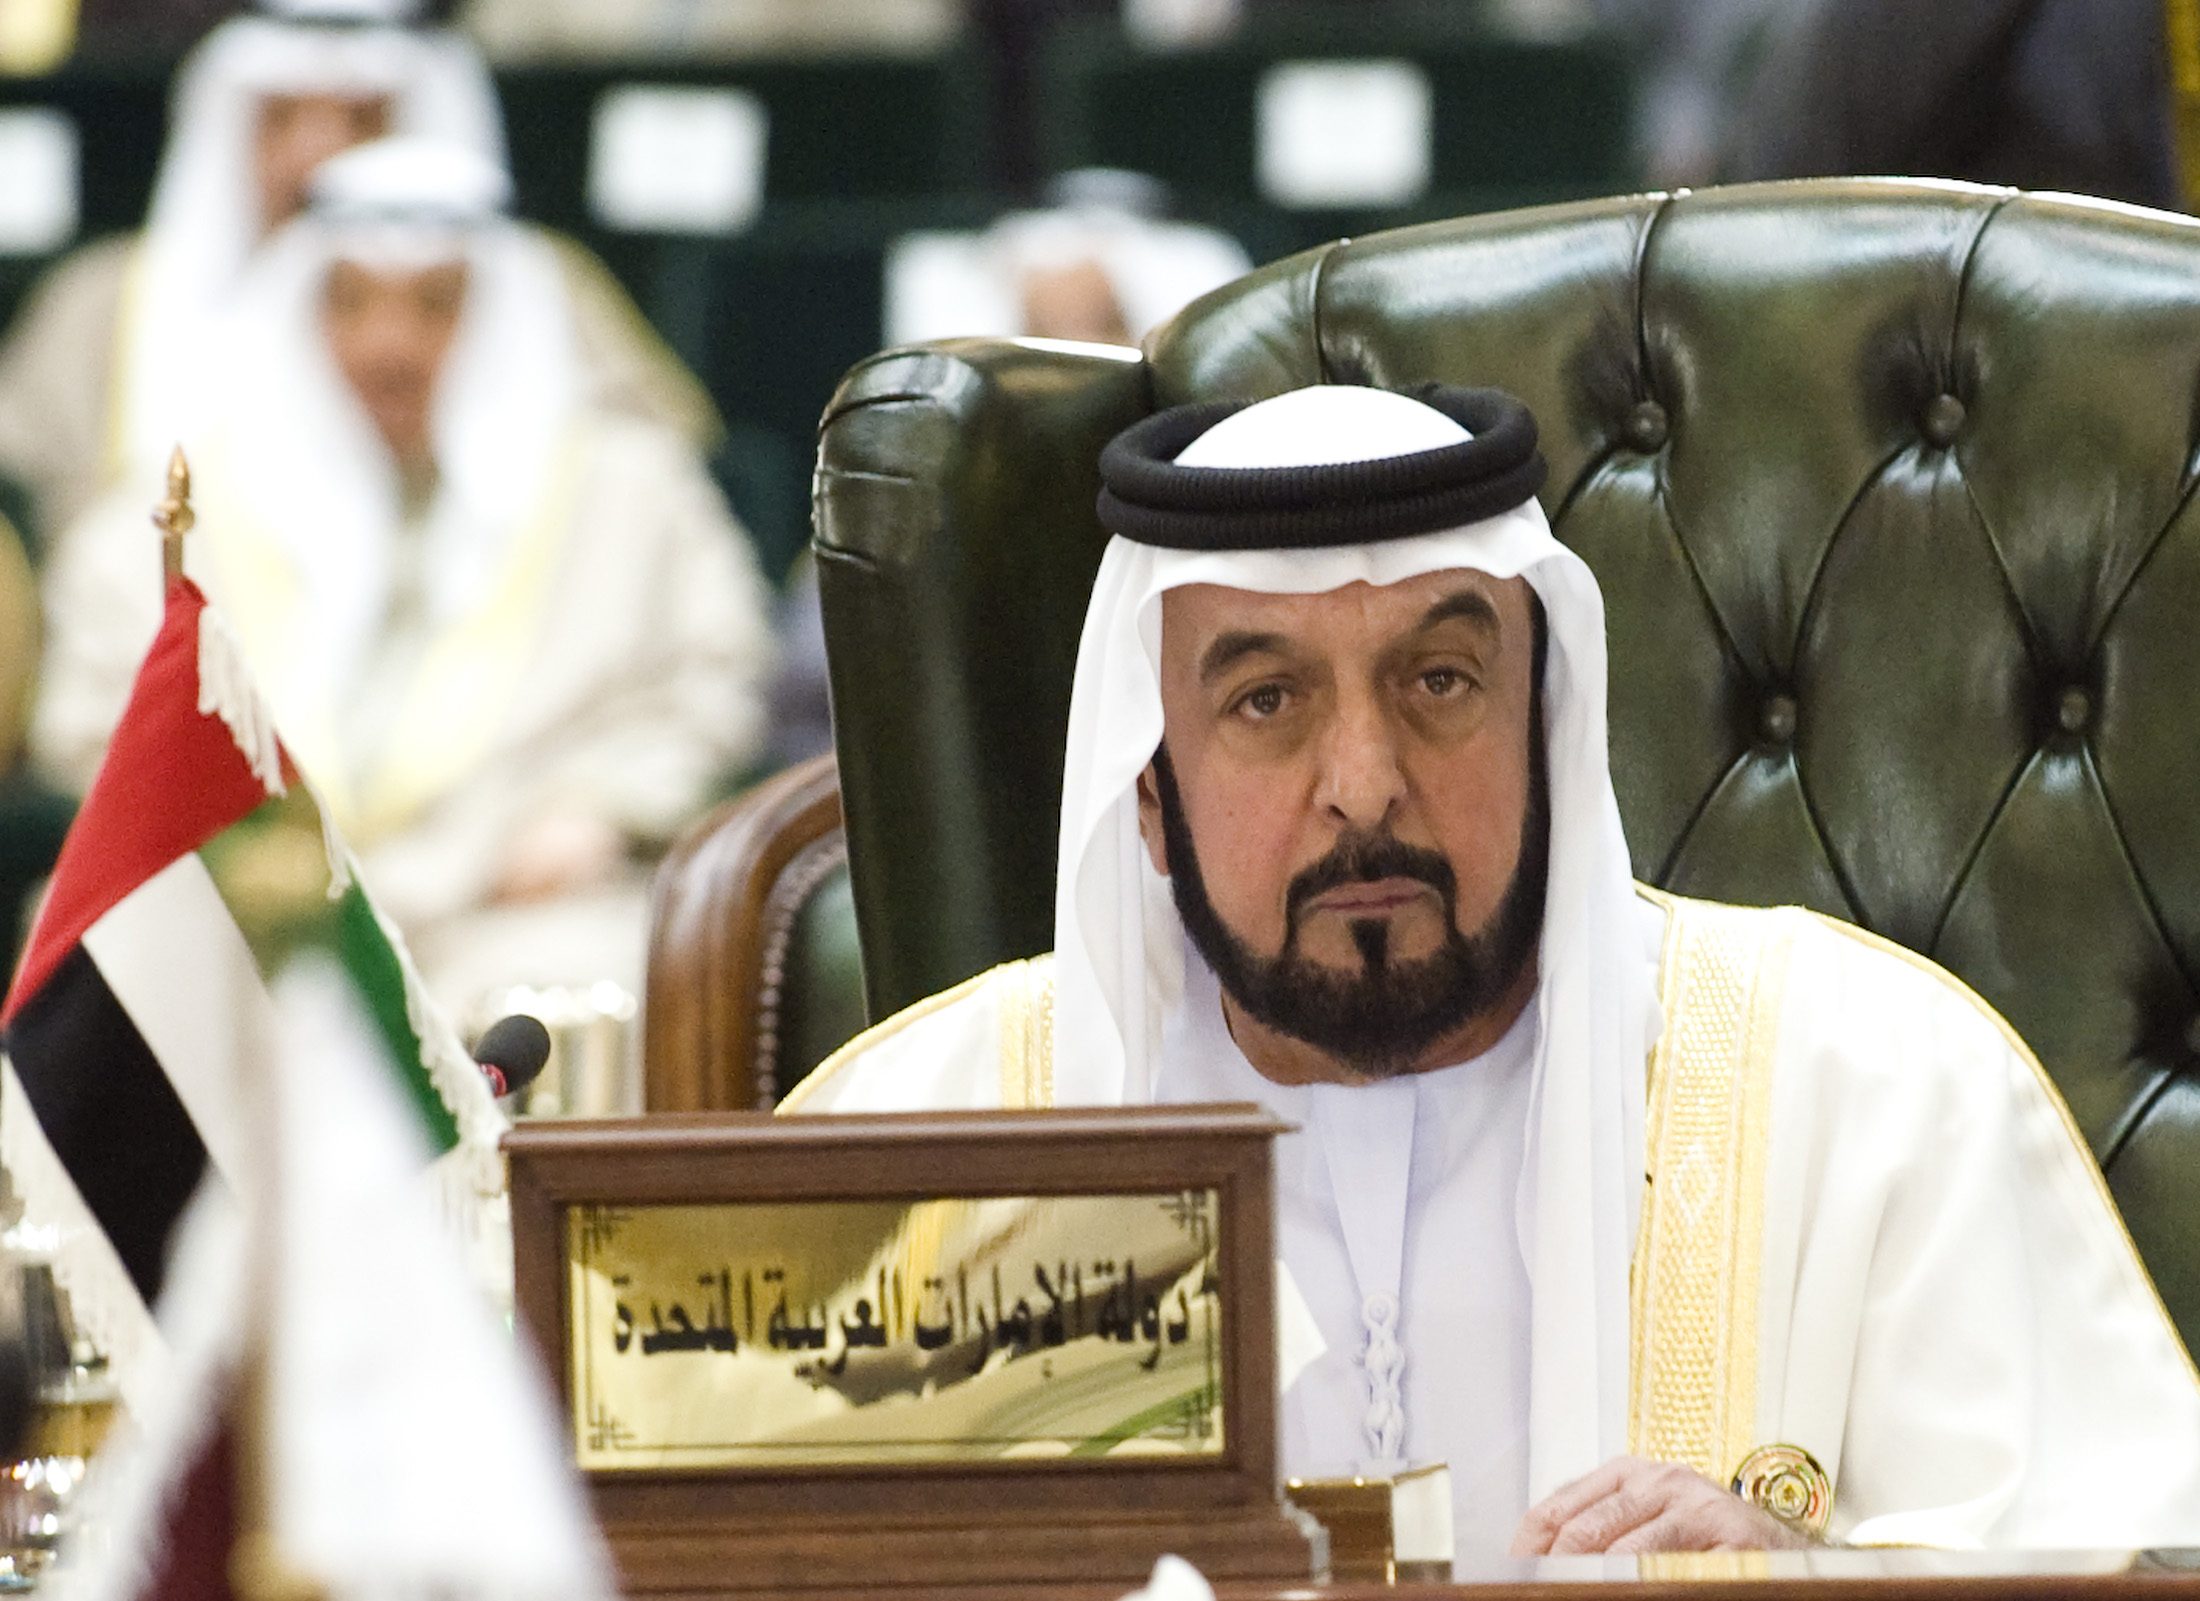 نتيجة بحث الصور عن الشيخ خليفة بن زايد آل نهيان، رئيس دولة الإمارات